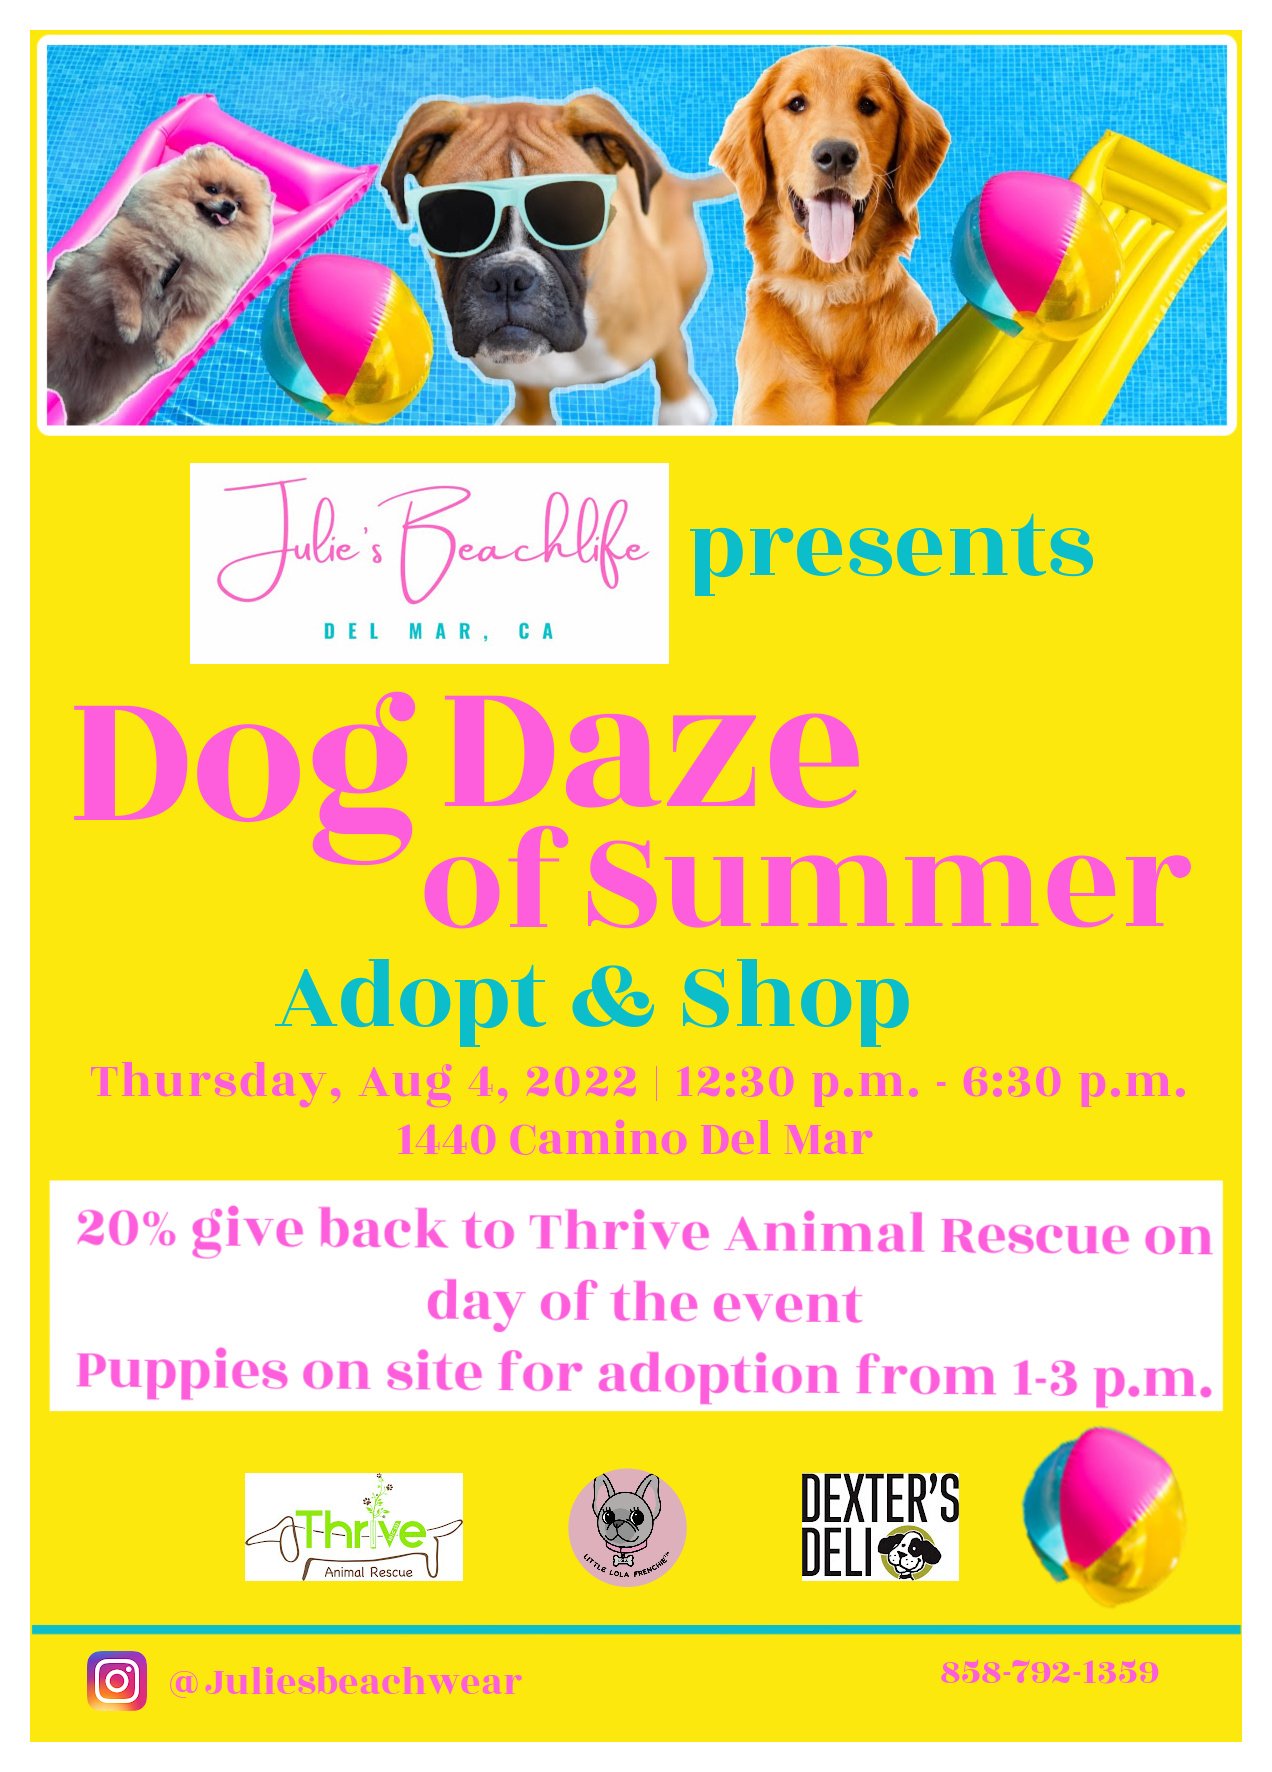 Dog Daze of Summer Event — Visit Del Mar Village